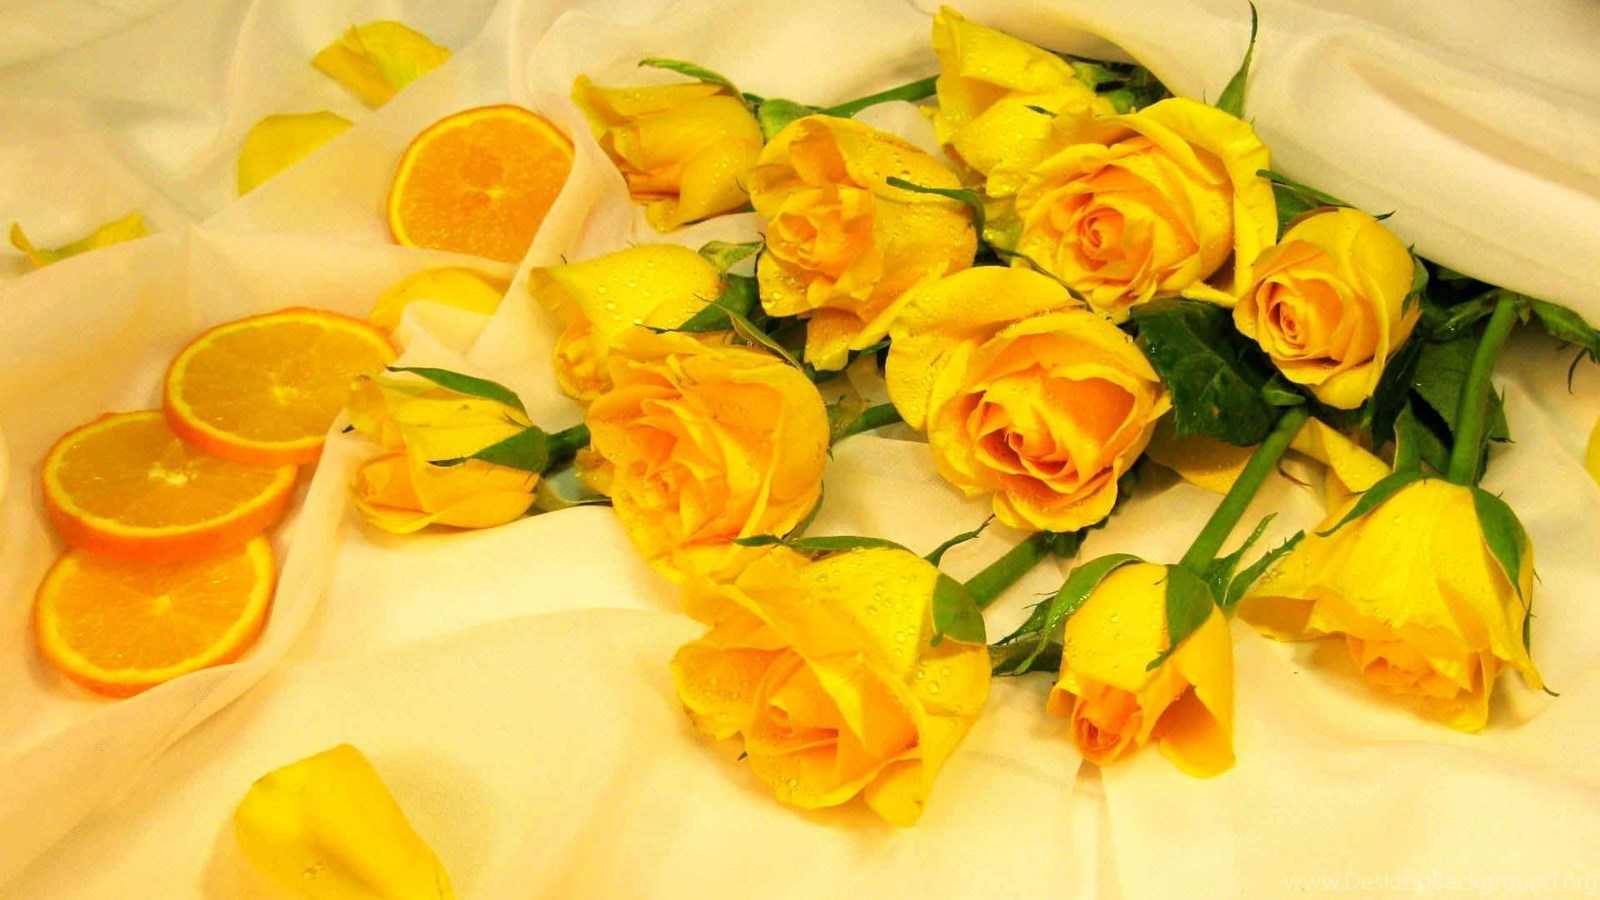 В каких случаях дарят желтые розы - автор ирина колосова - журнал женское мнение